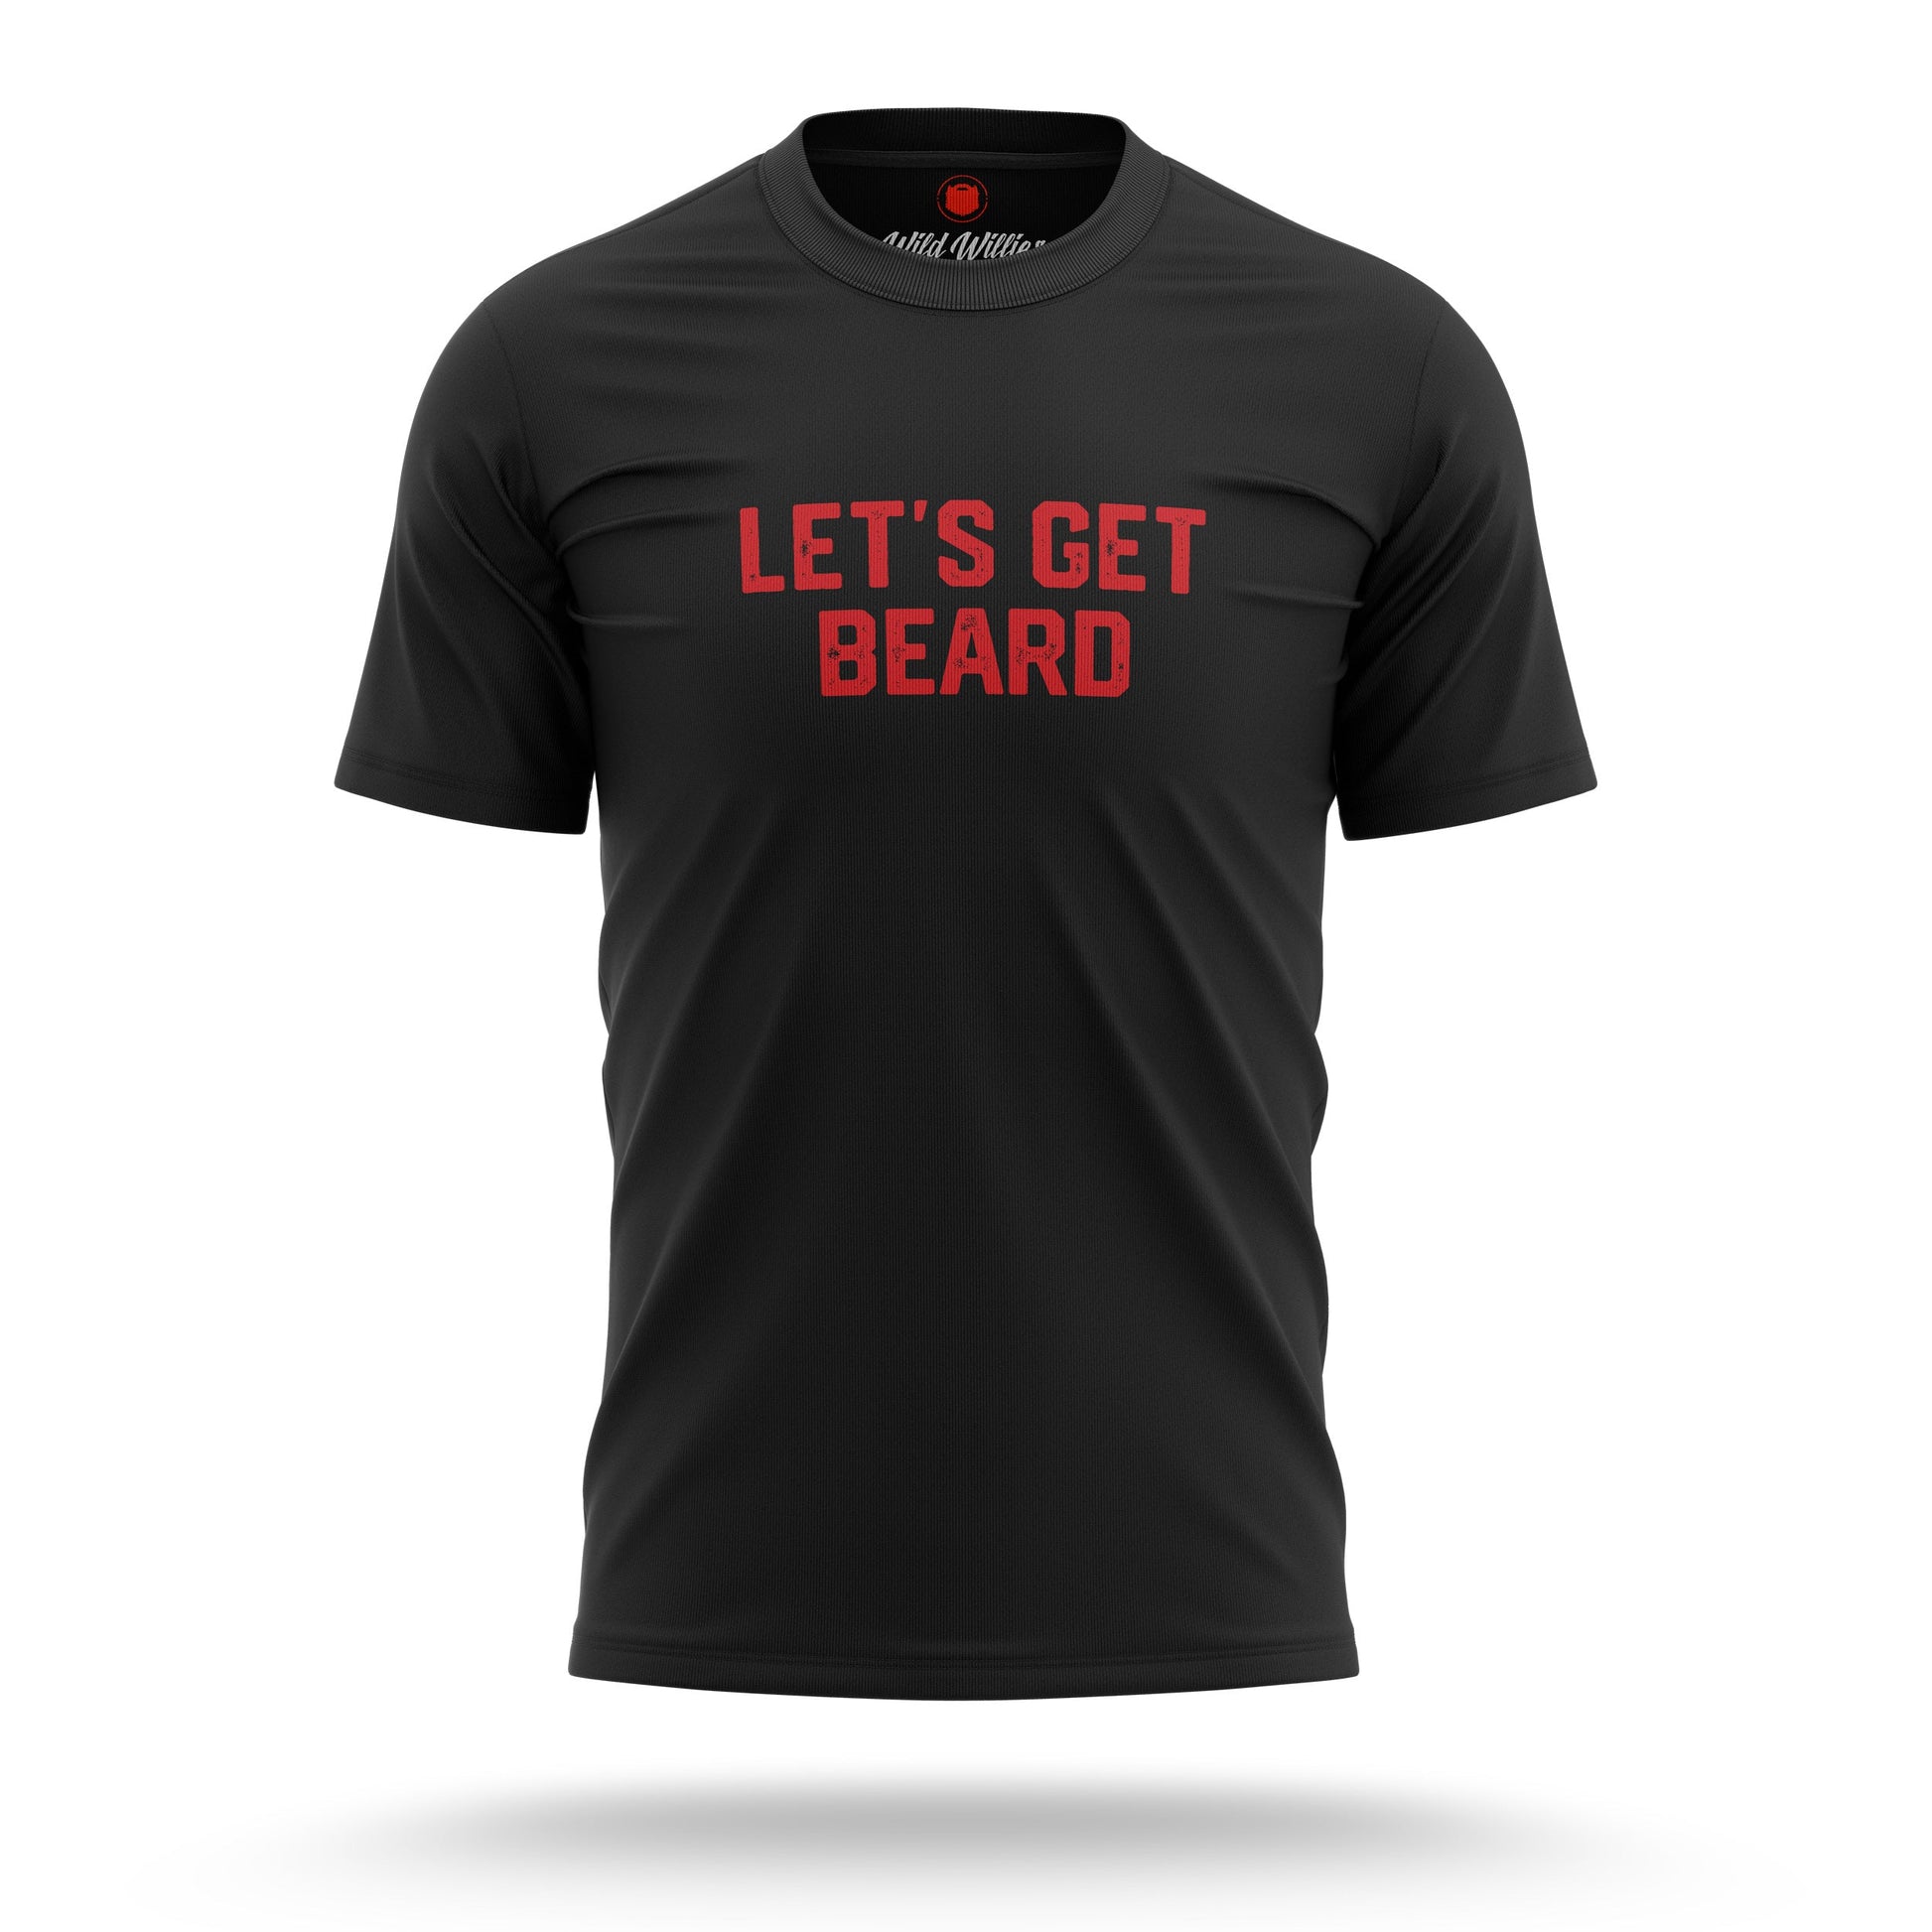 Let's Get Beard - T-Shirt T-Shirt Wild-Willies S Black 